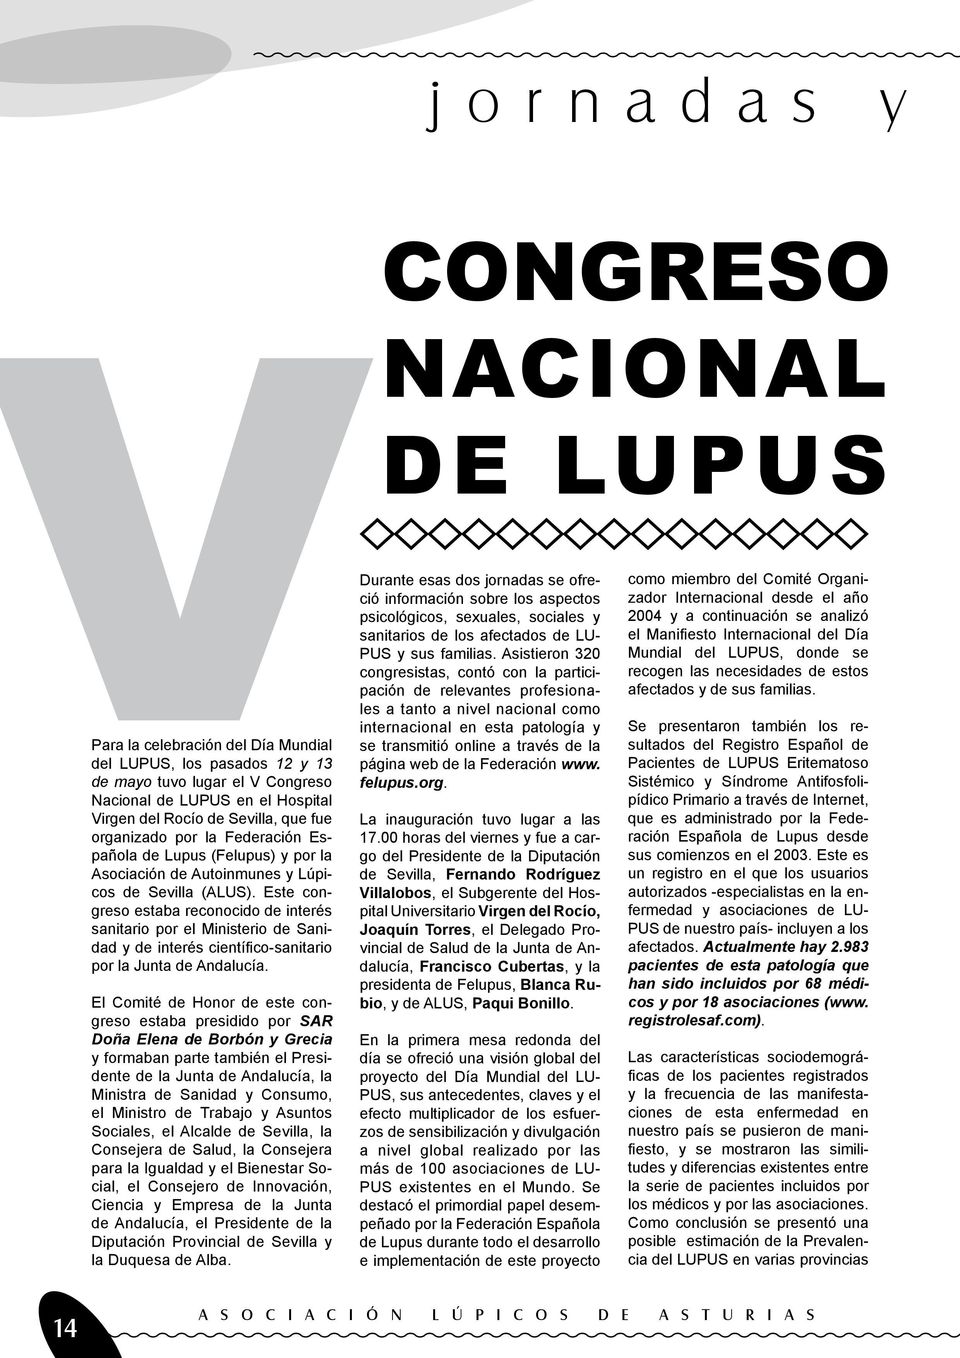 Este congreso estaba reconocido de interés sanitario por el Ministerio de Sanidad y de interés científico-sanitario por la Junta de Andalucía.